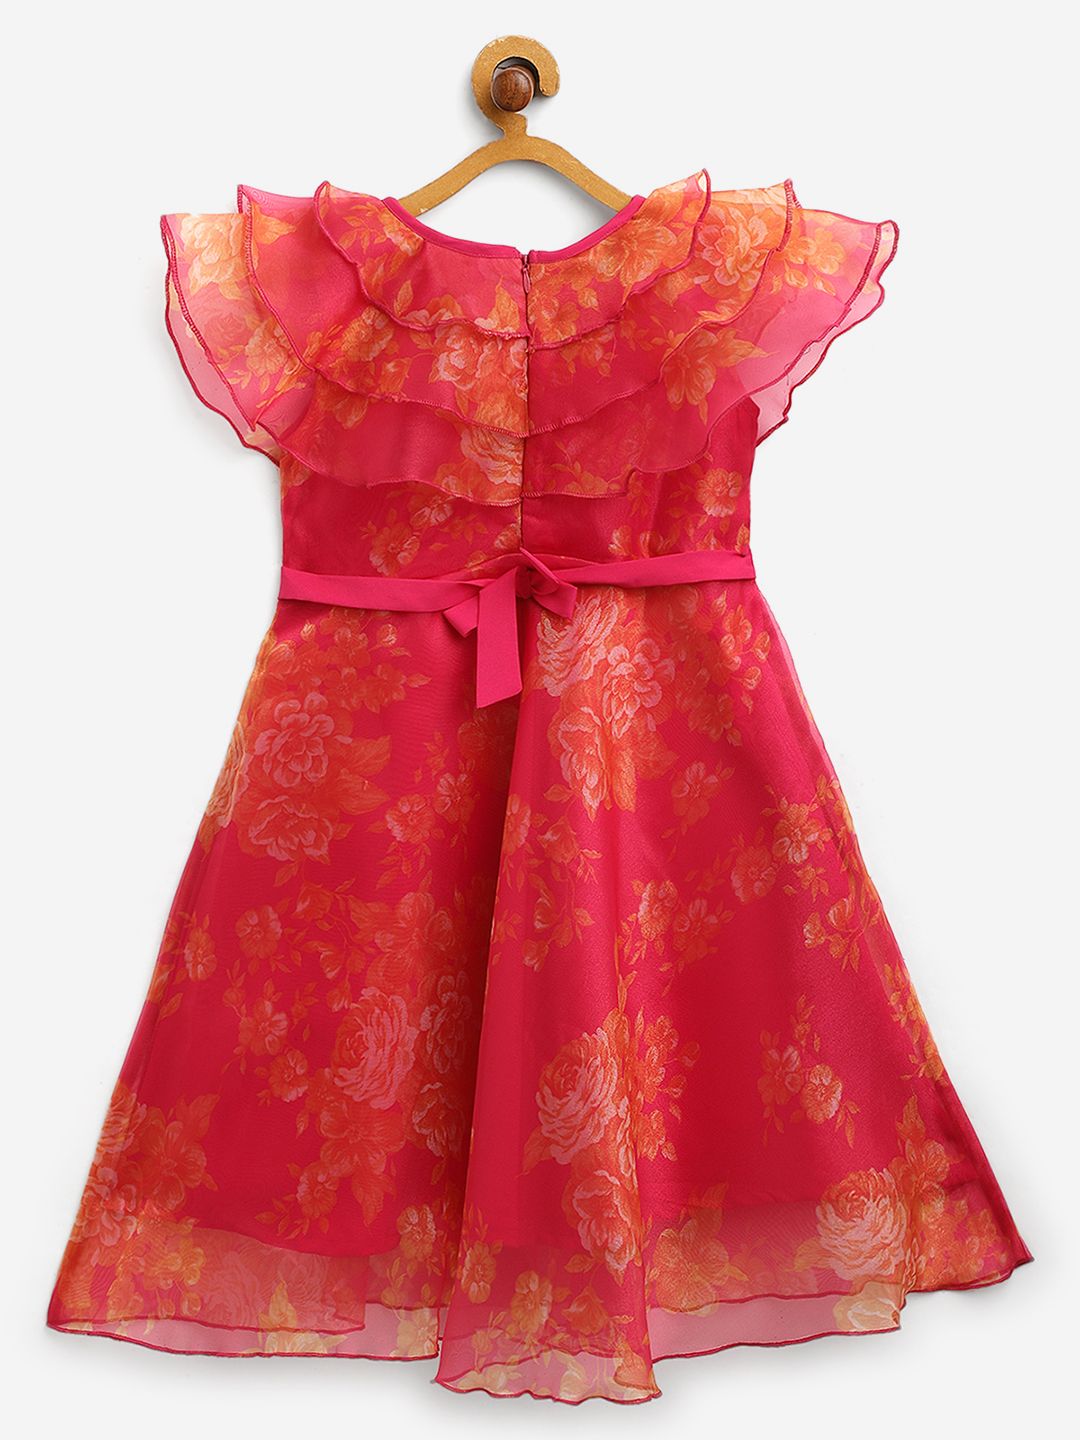 Pink Organza Digital Print Girls Dress